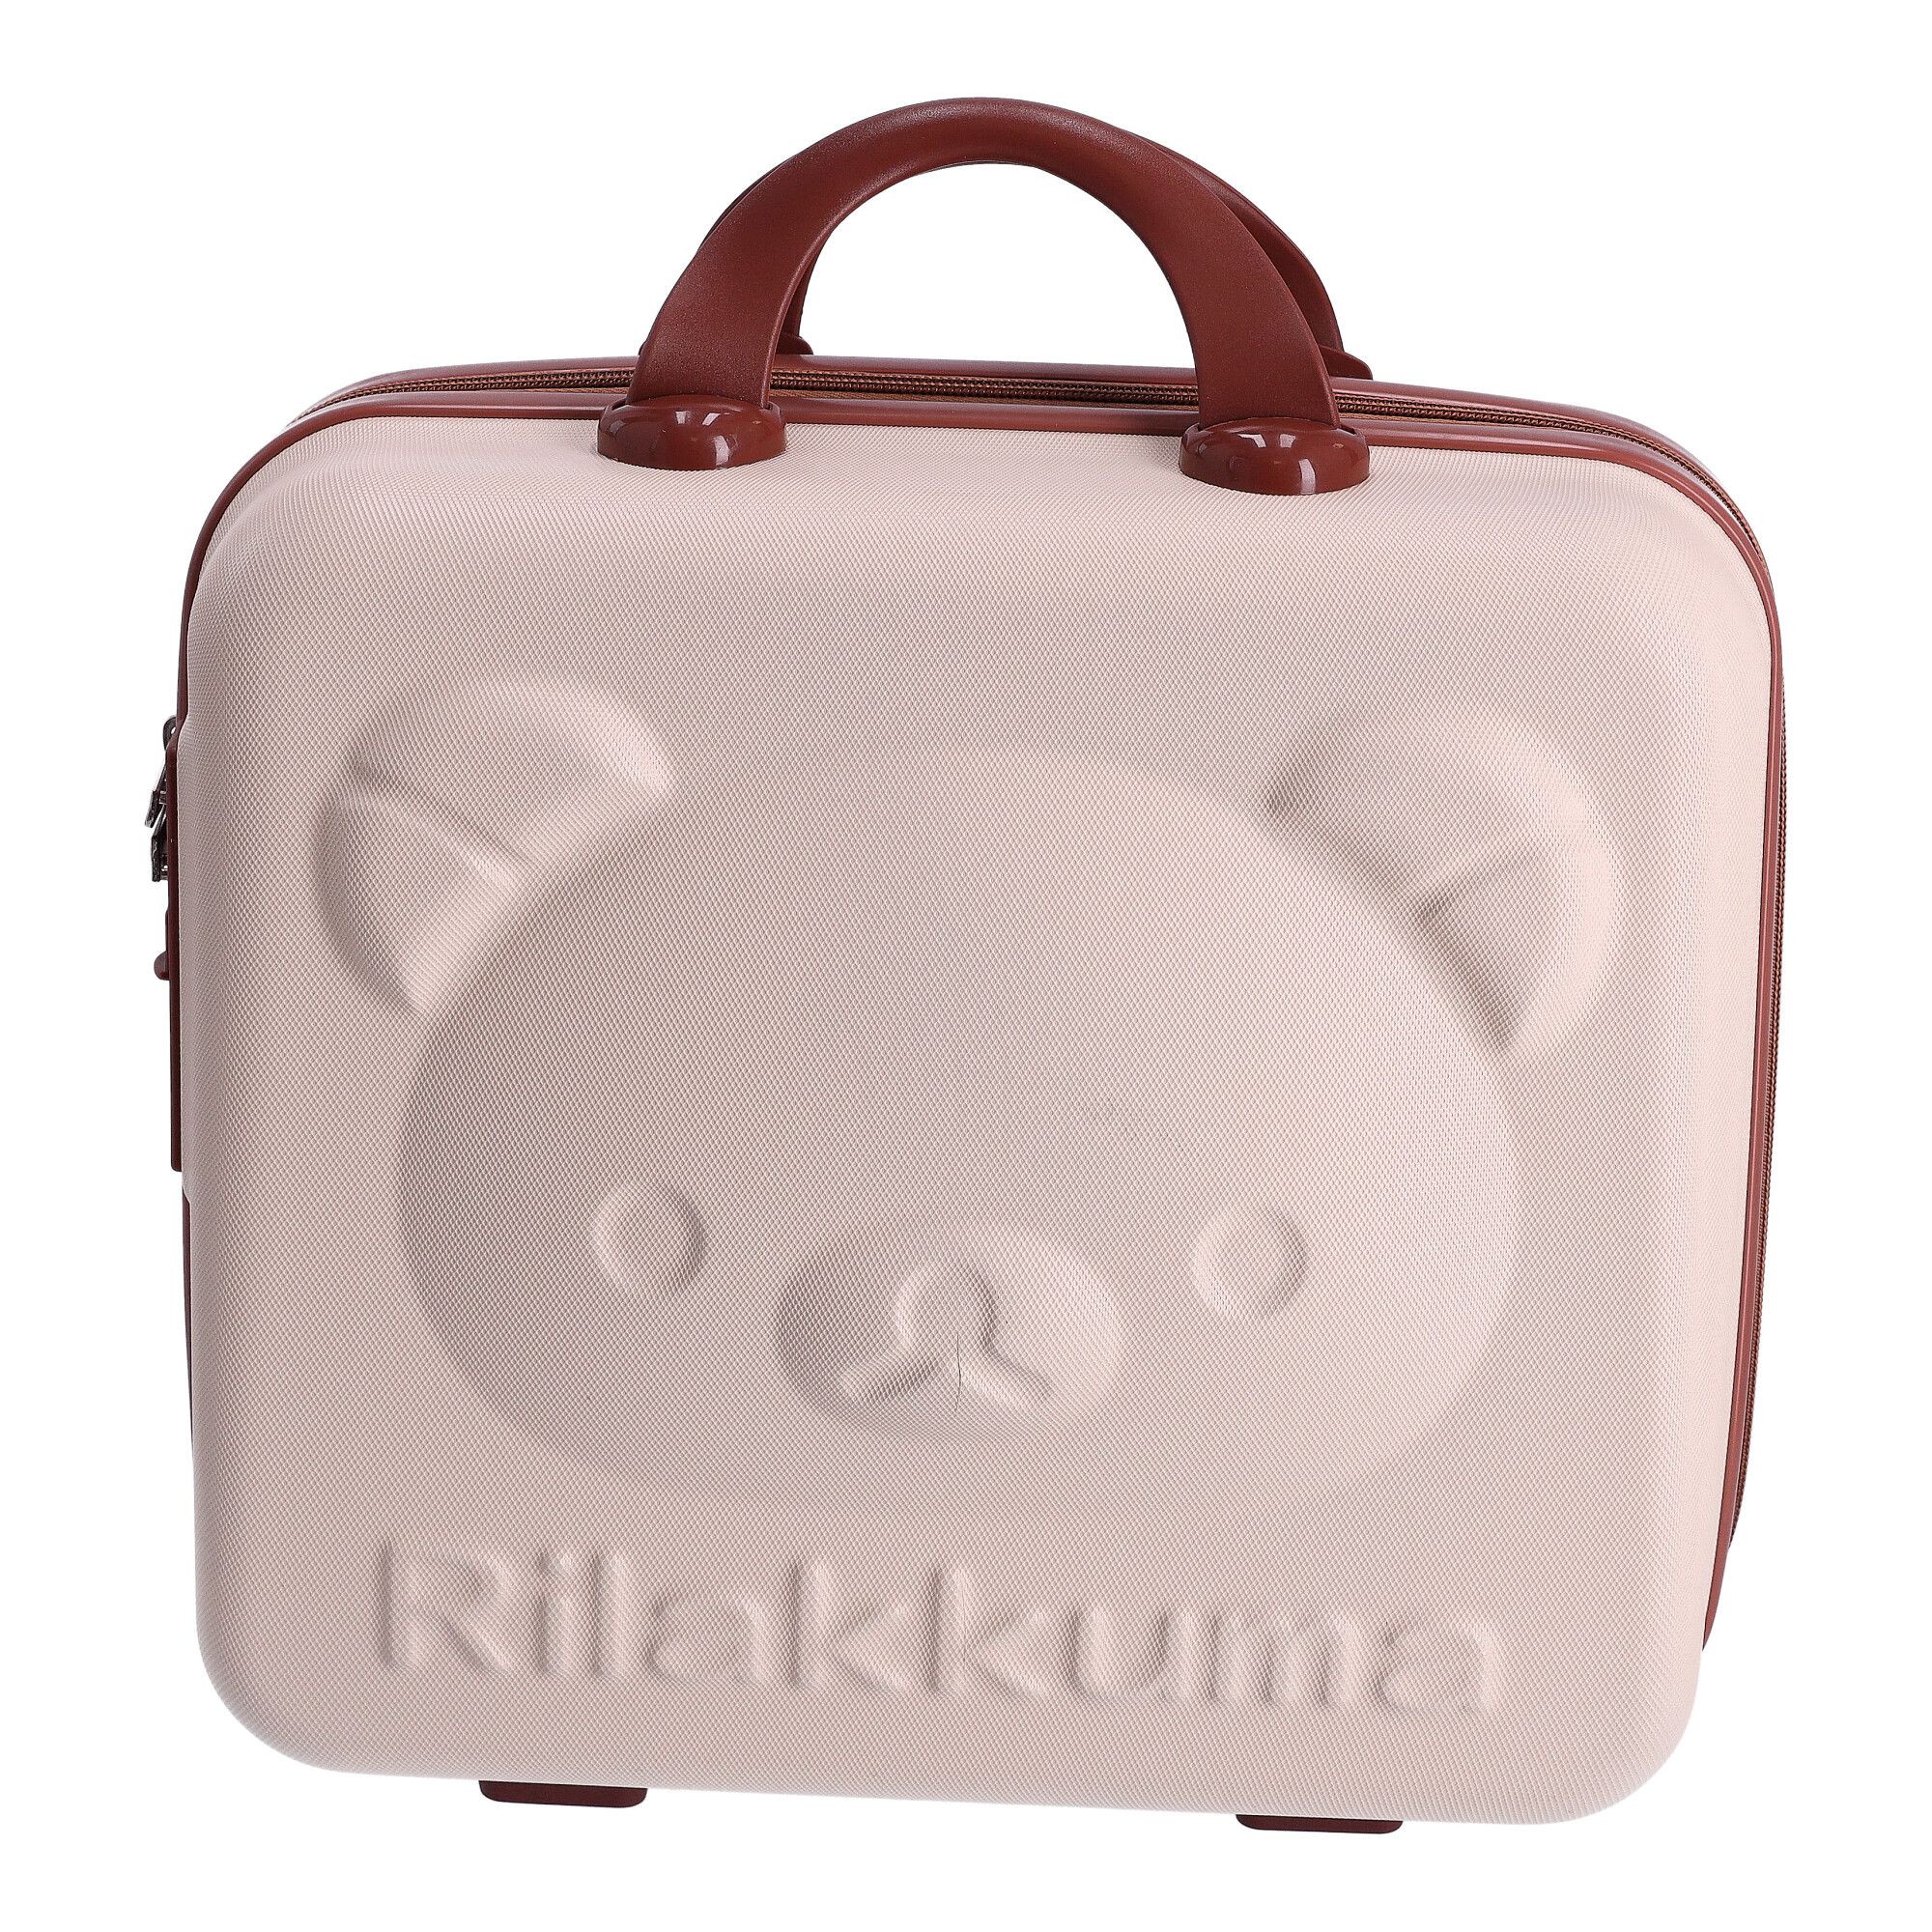 Dětský kufr - Lovely cestovní kosmetická taštička - béžovo-hnědá - dětské zavazadlo